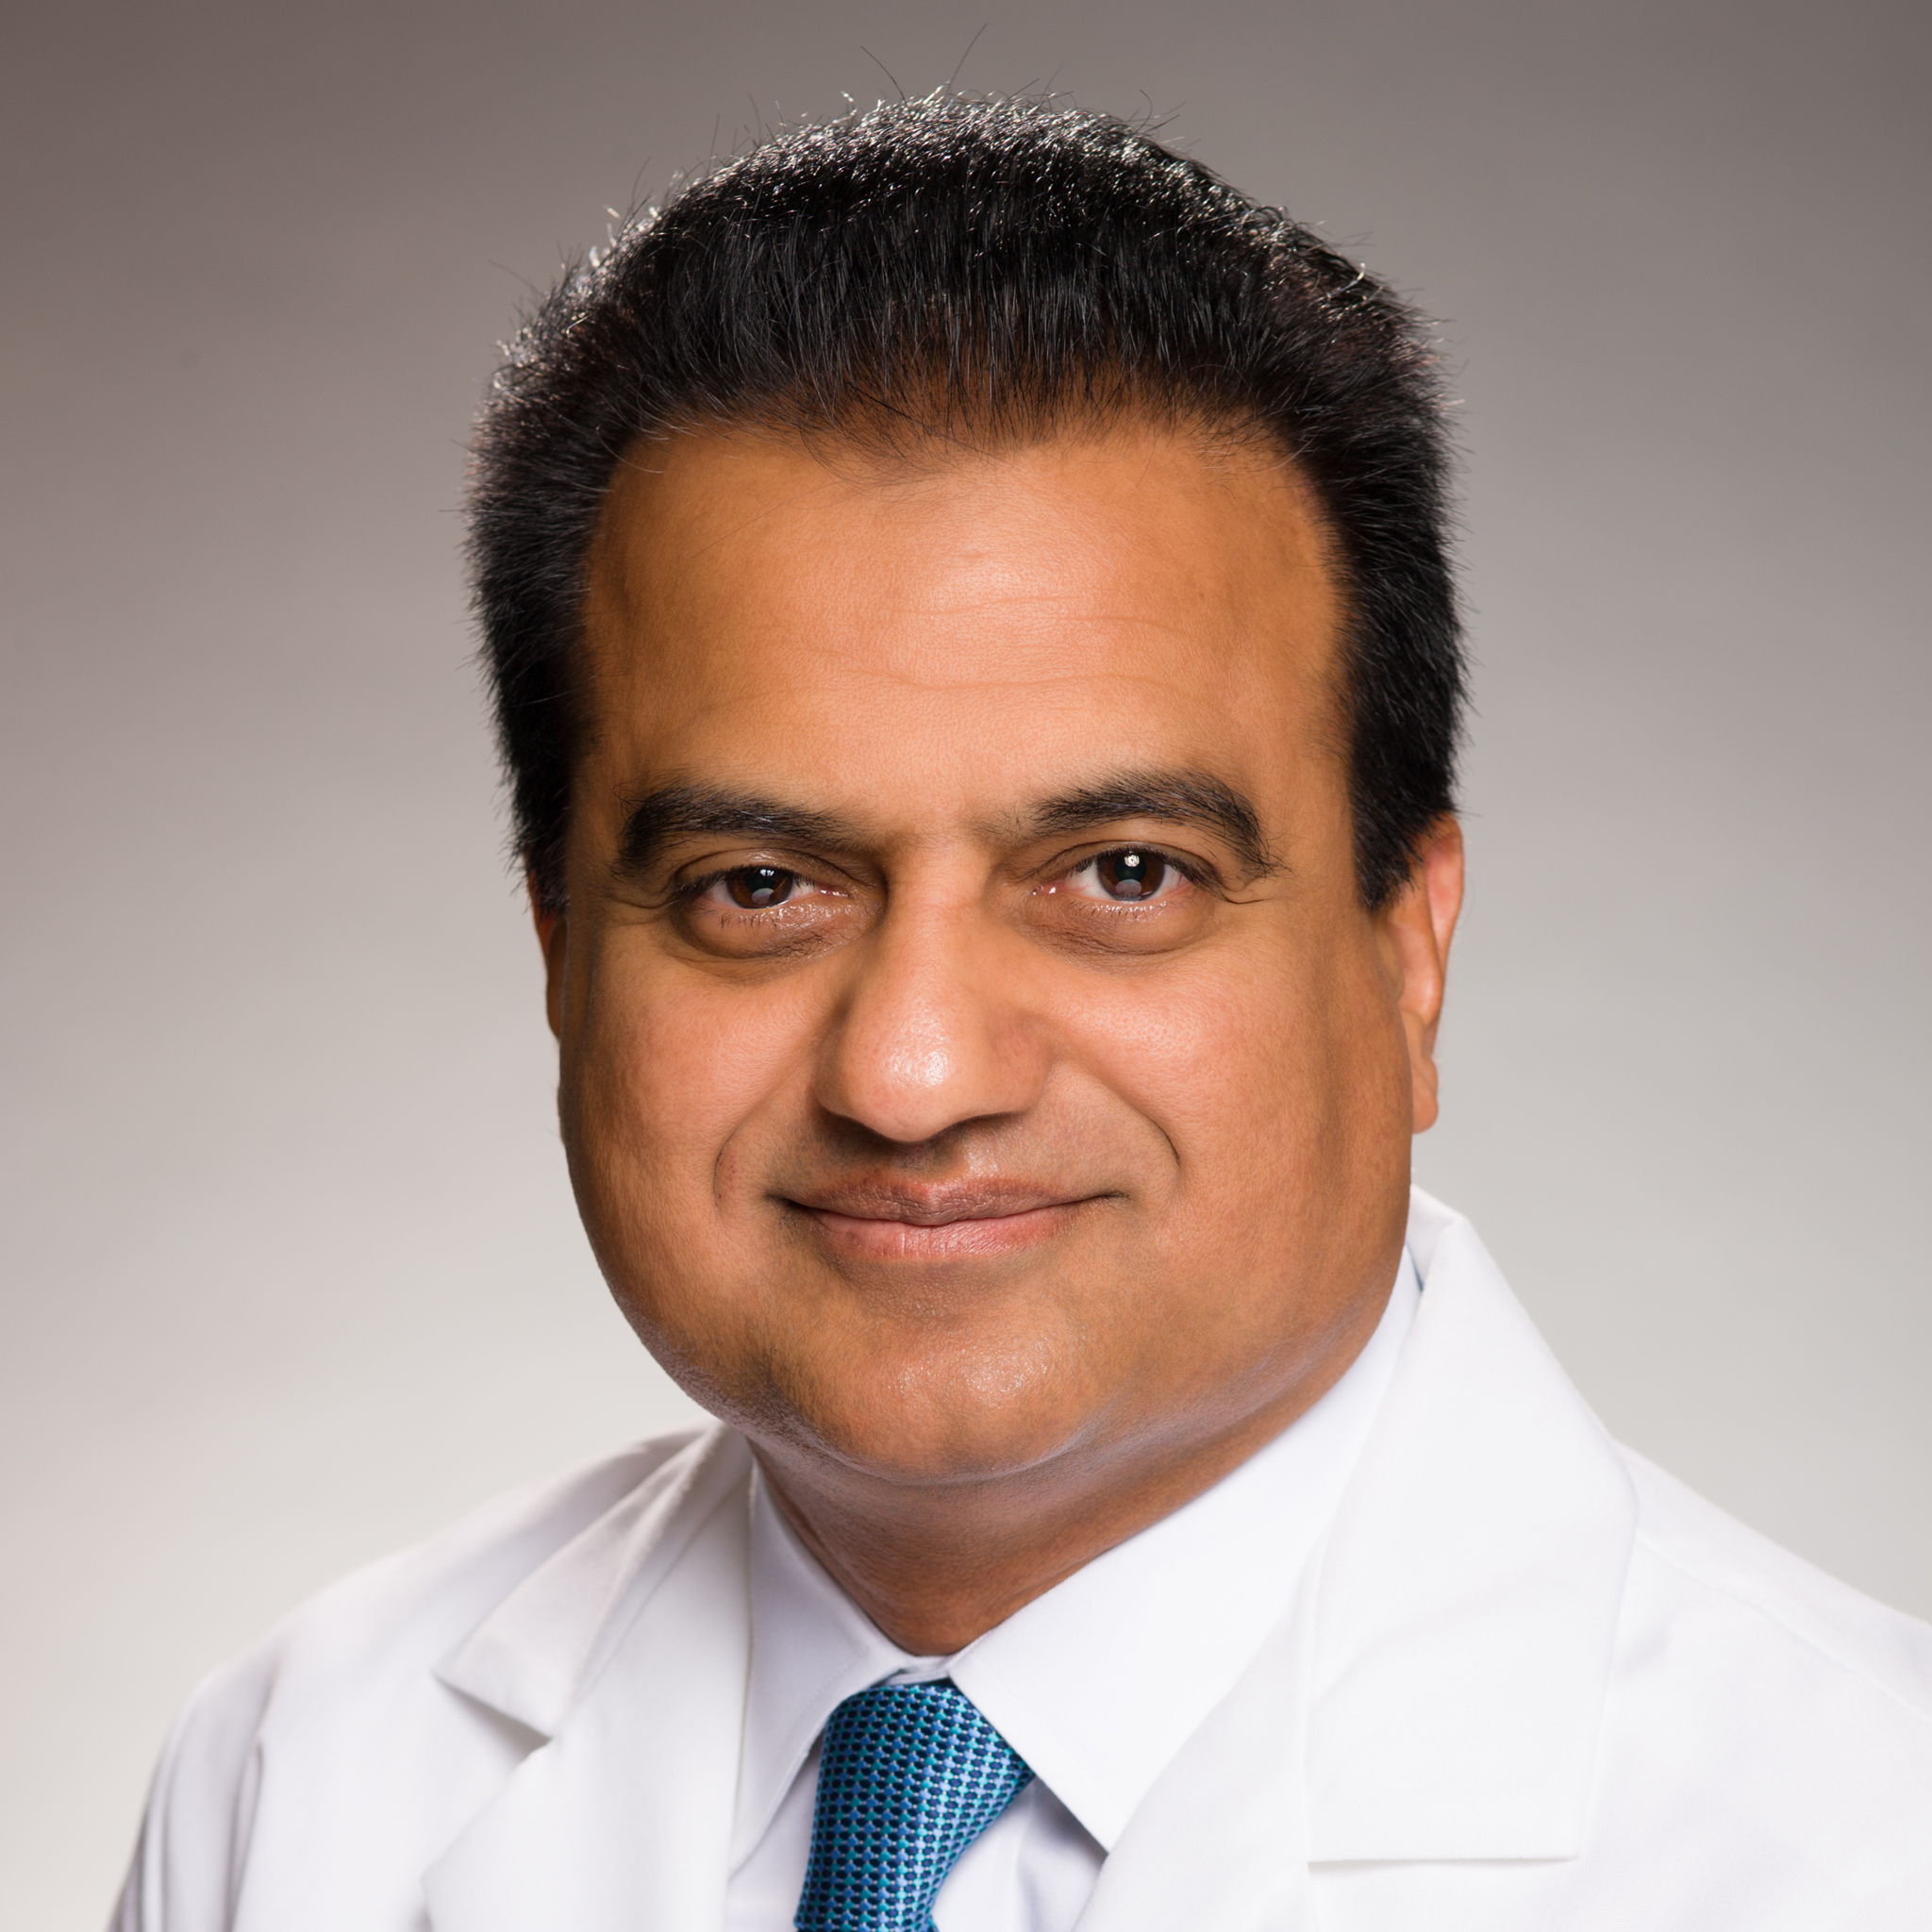 Dr. Maqsood Amjad M.D., Doctor